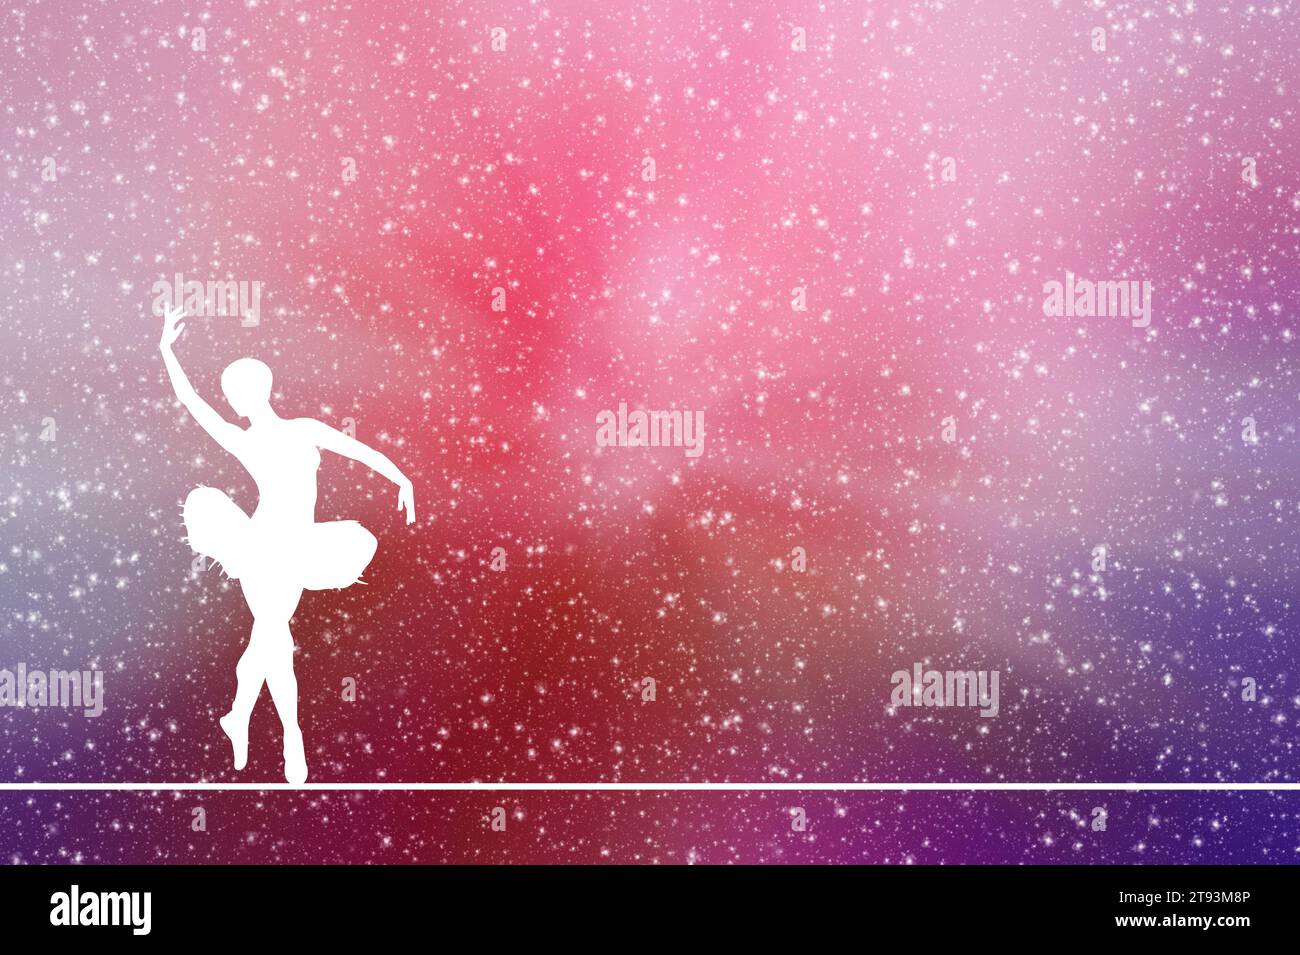 illustration de silhouette d'une danseuse de ballerine classique Banque D'Images